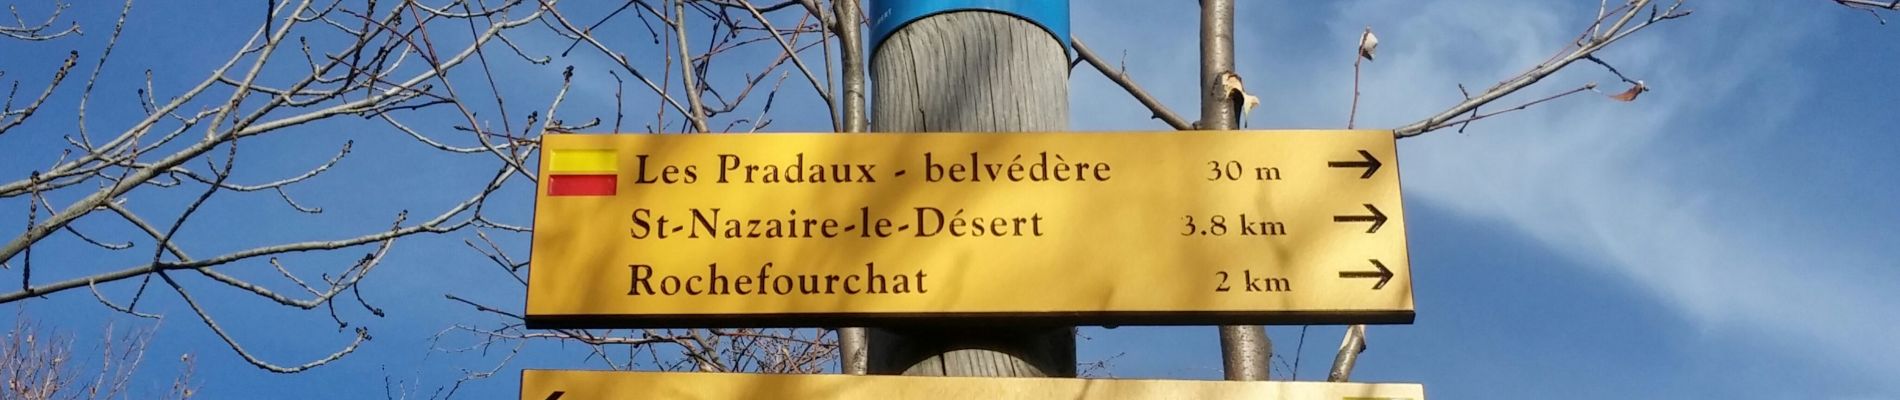 Trail Walking Saint-Nazaire-le-Désert - bergeries de pradaux saint Nazaire le désert - Photo